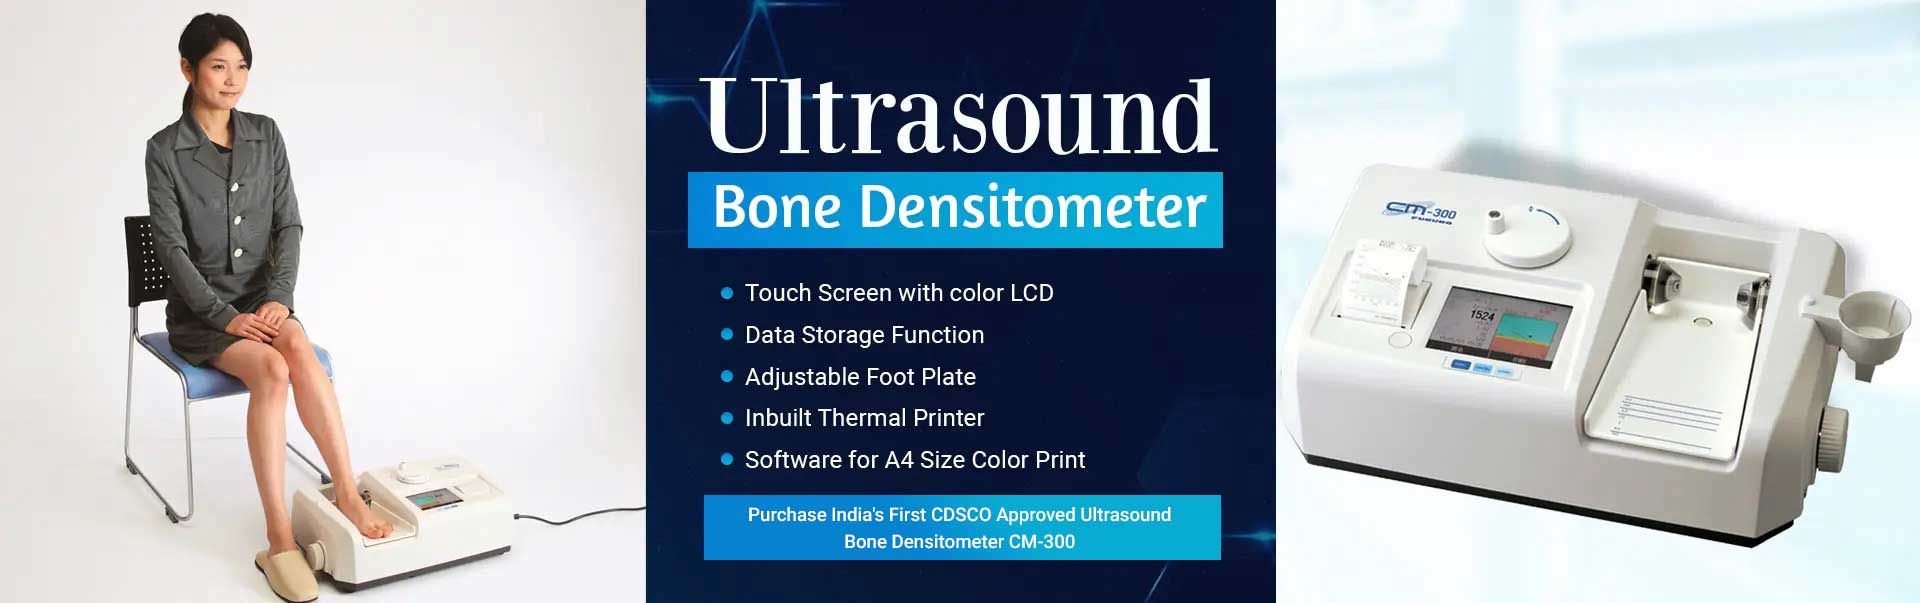 Ultrasound Bone Densitometer Manufacturers in Jamshedpur